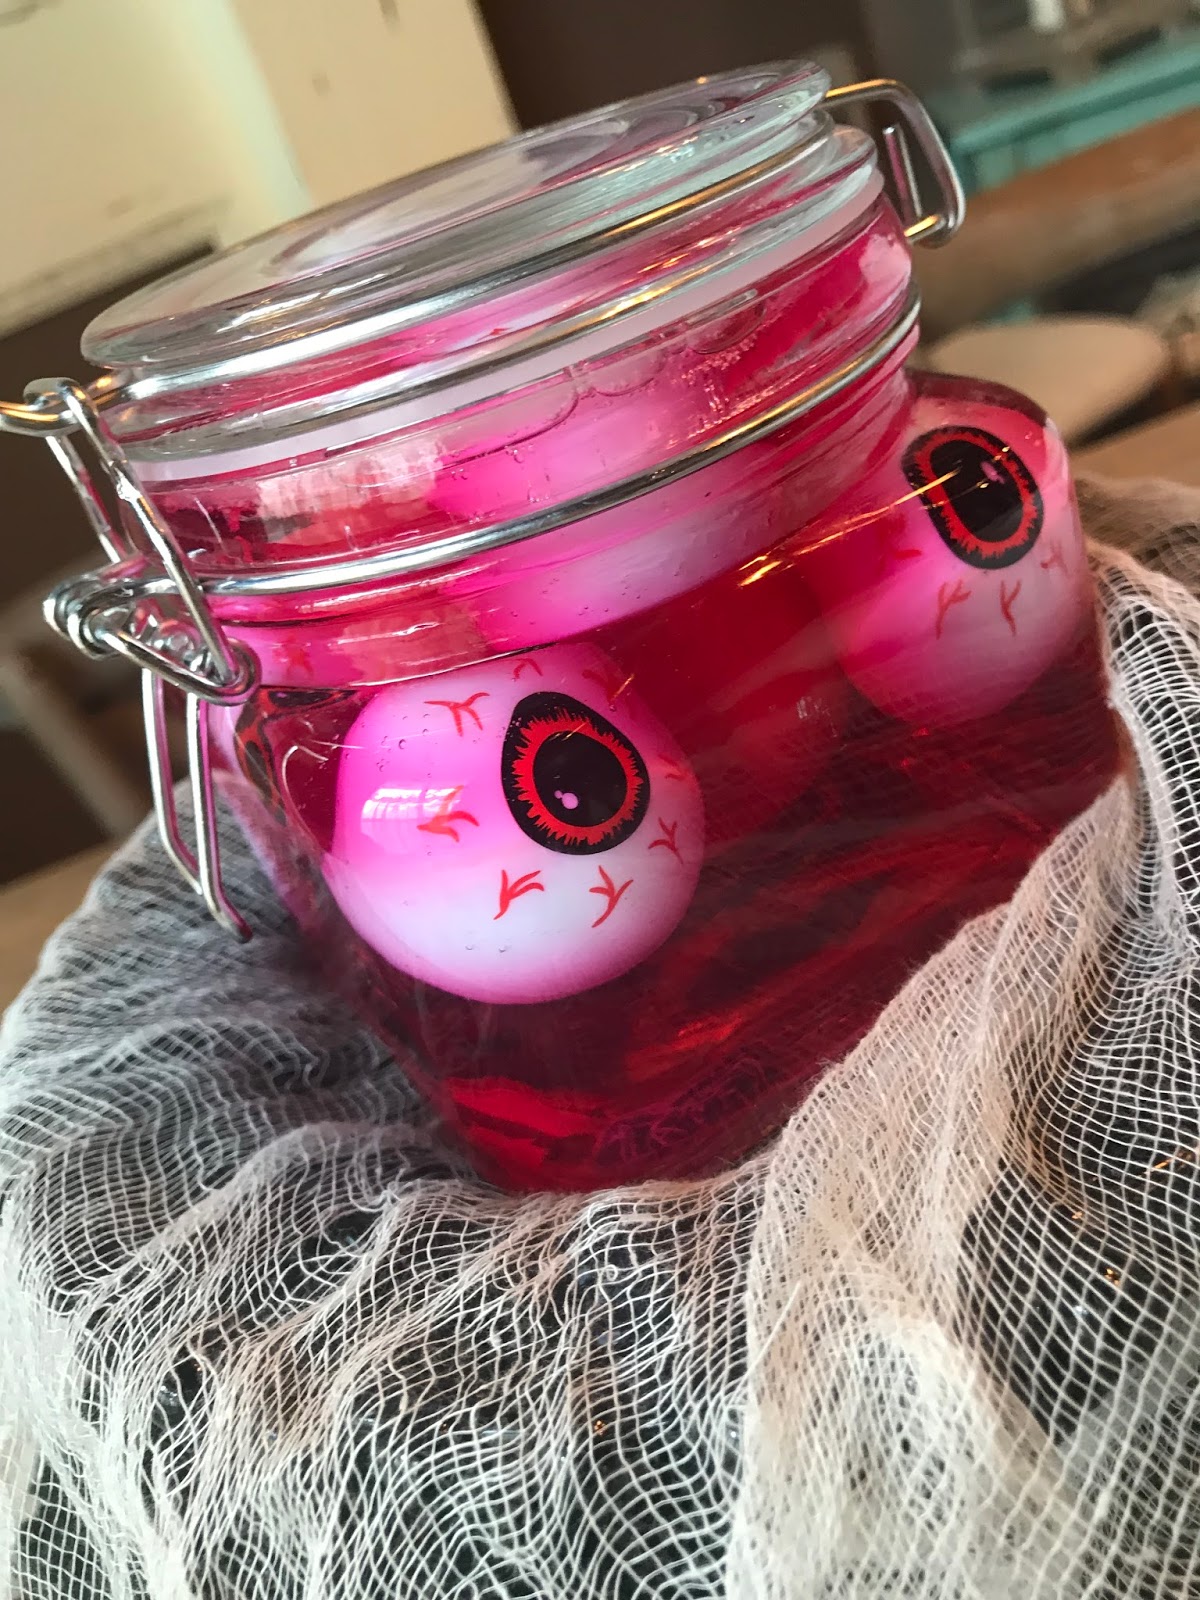 Ivory Lidded Jar | Jar lids, Temple jar, Jar